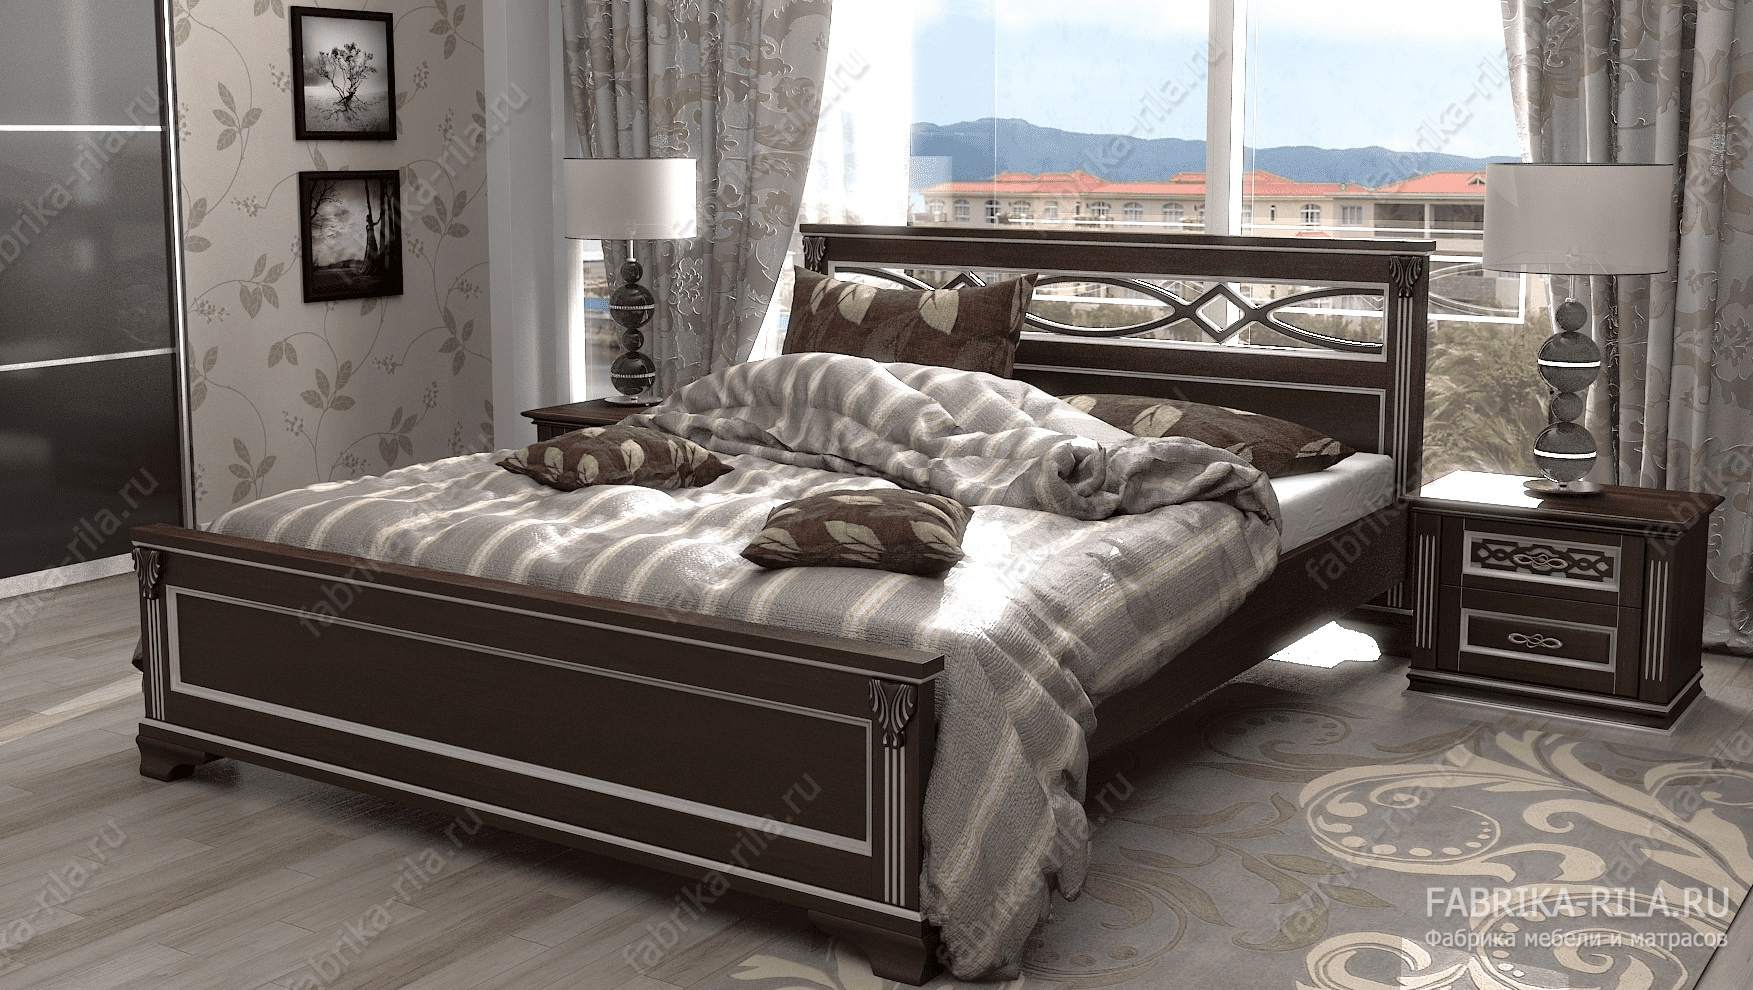 Кровать Lirоna 1 — 140x200 см. из сосны